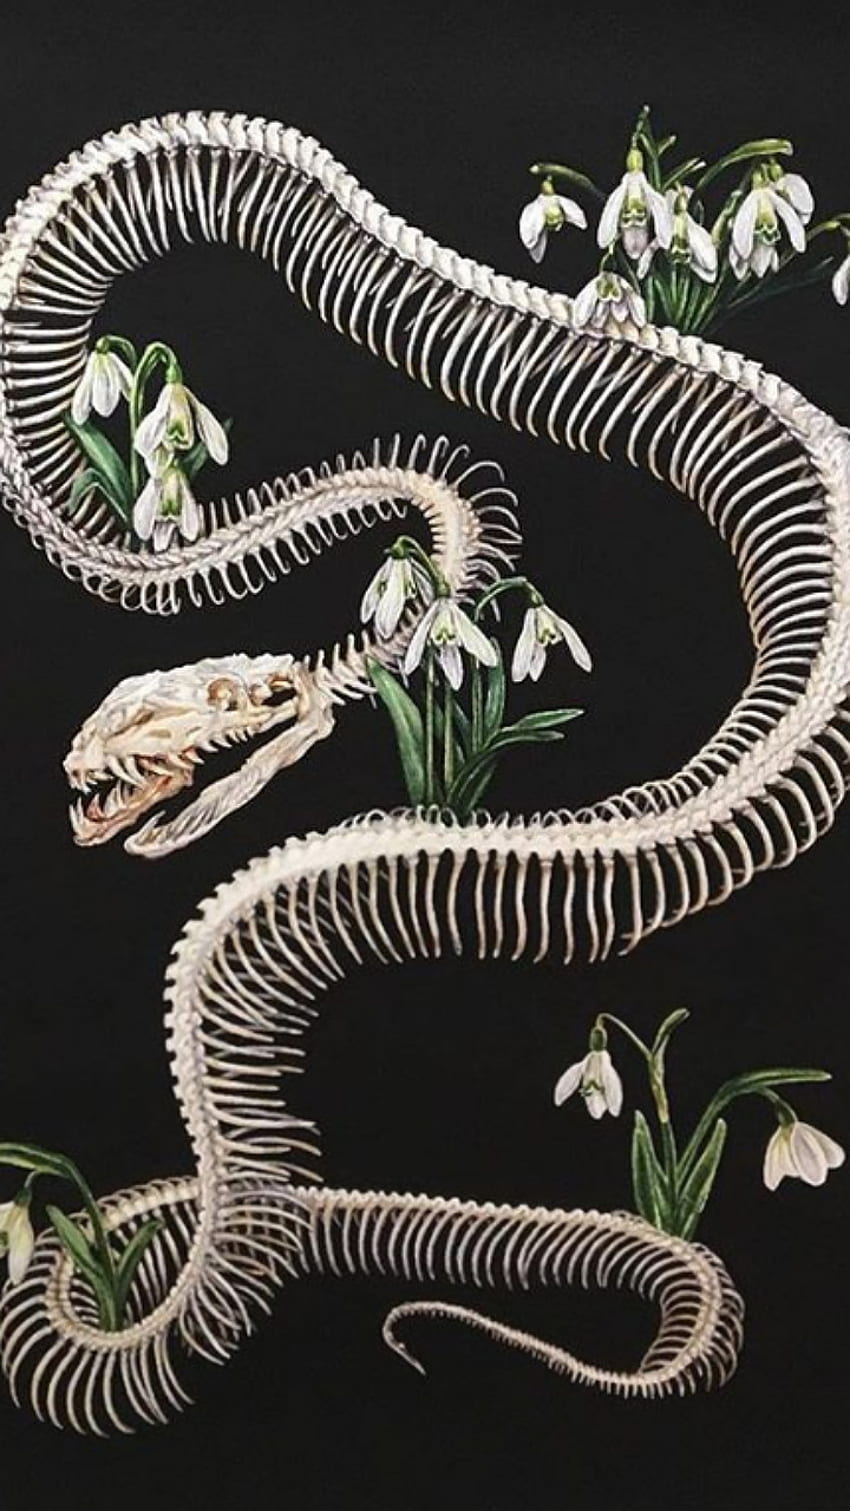 Bones after life, terrestrial animal, flowers, snake bones HD phone wallpaper